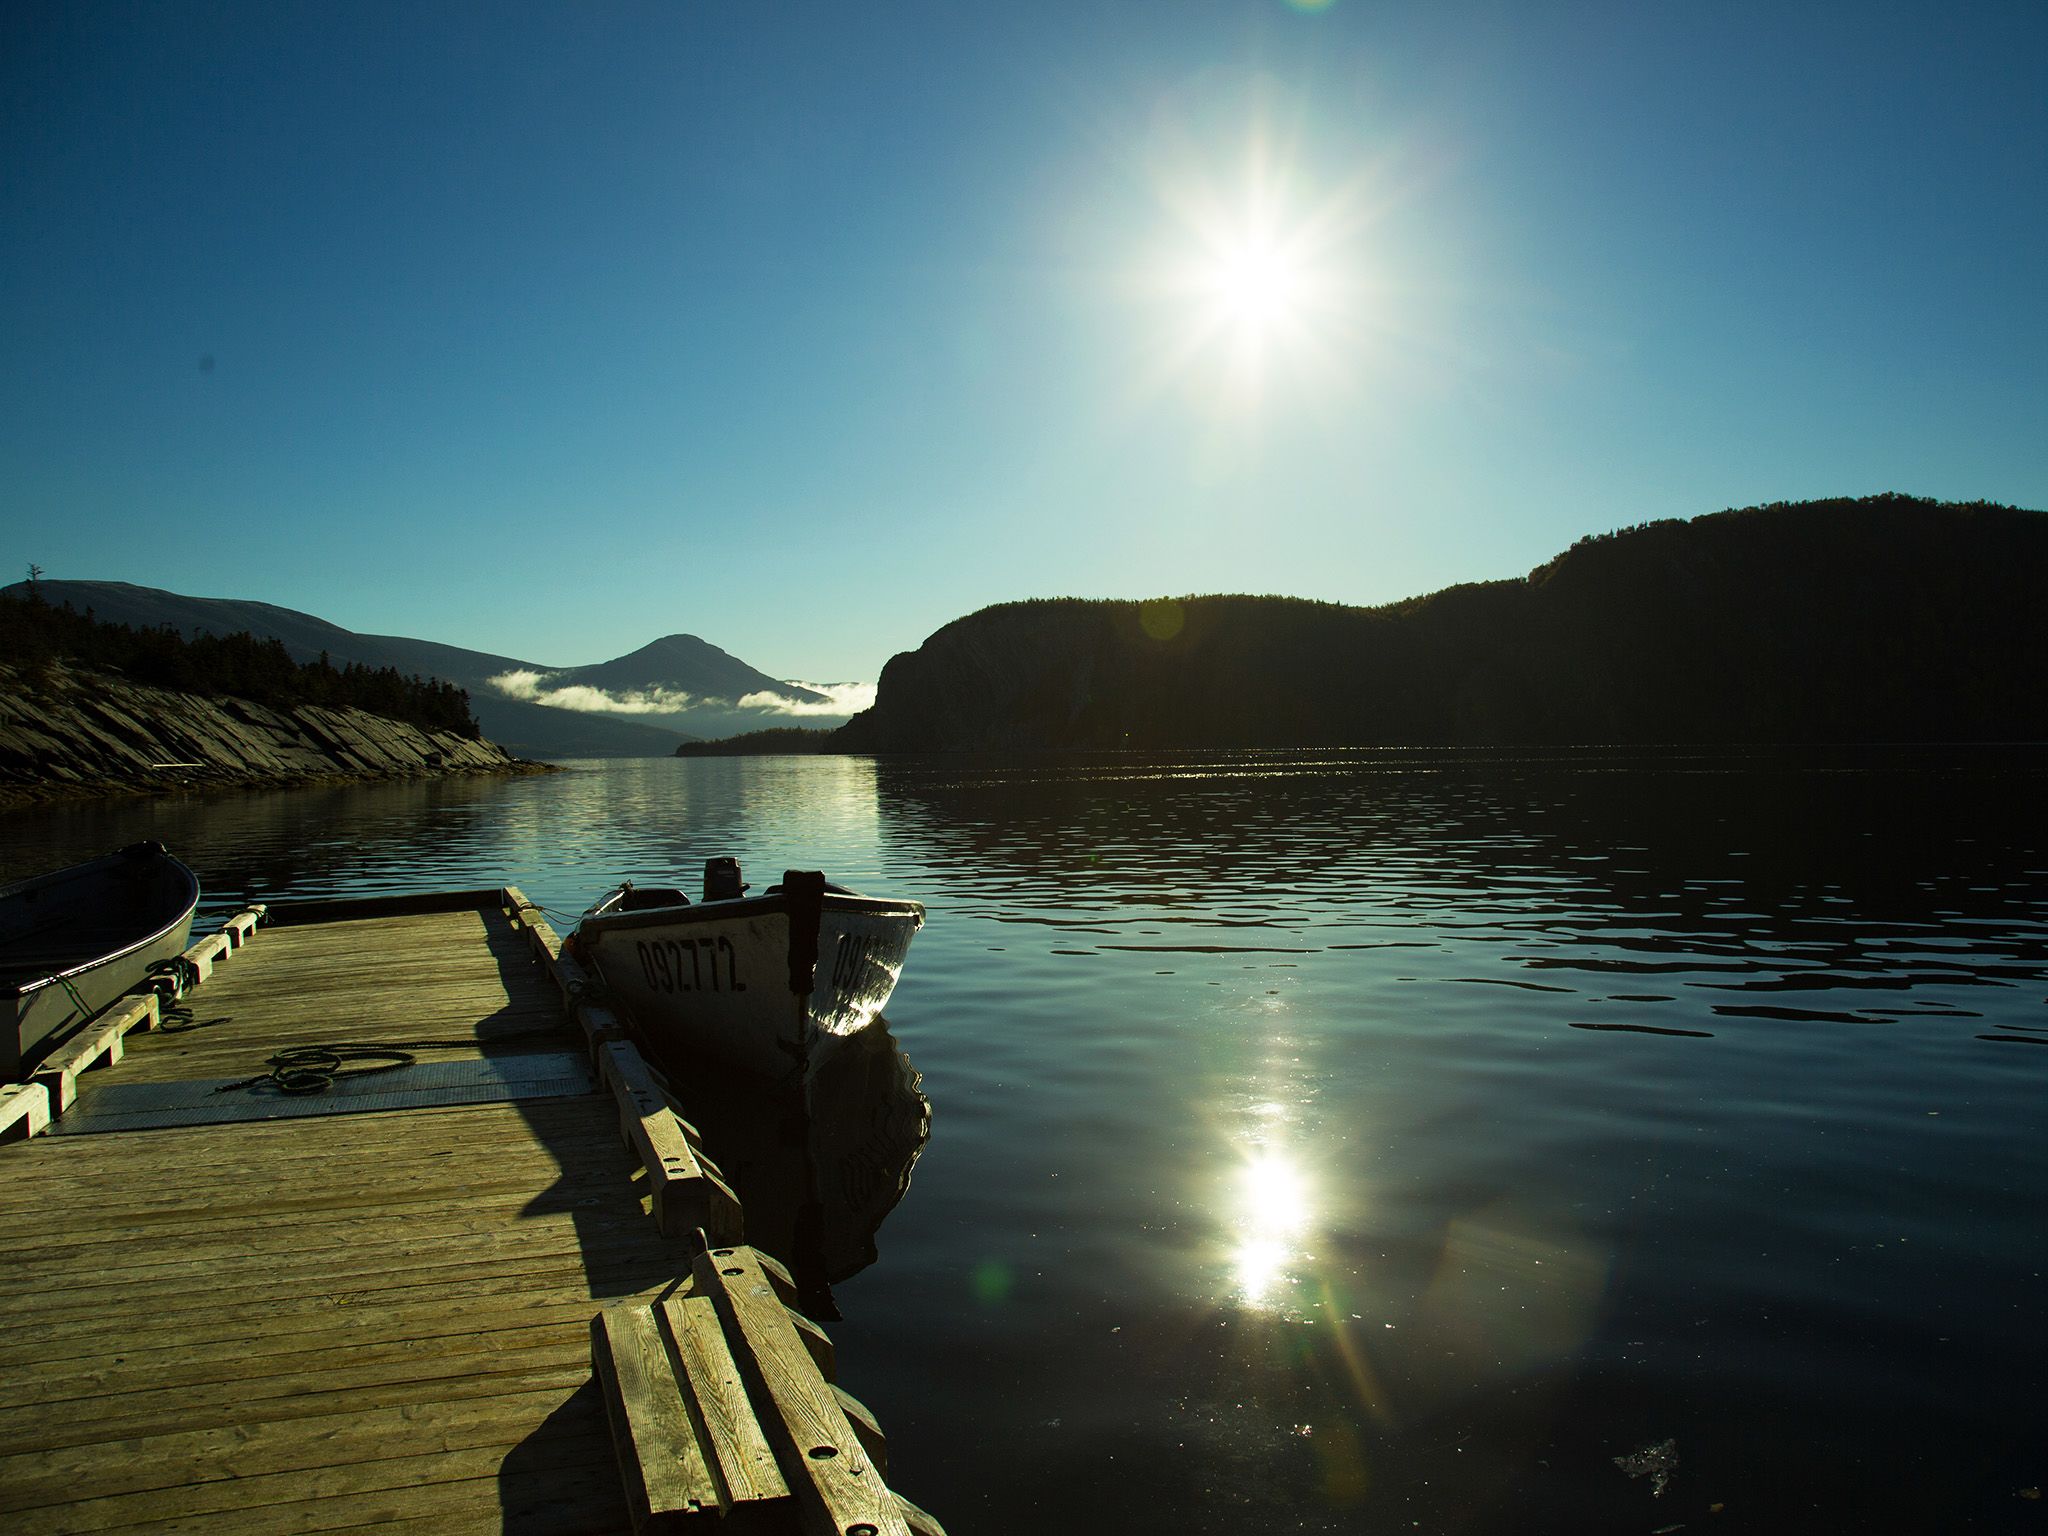 كندا: يجوب سيدو في هذه المياه. هذه الصورة مأخوذة من Cold... [Photo of the day - مارس 2015]